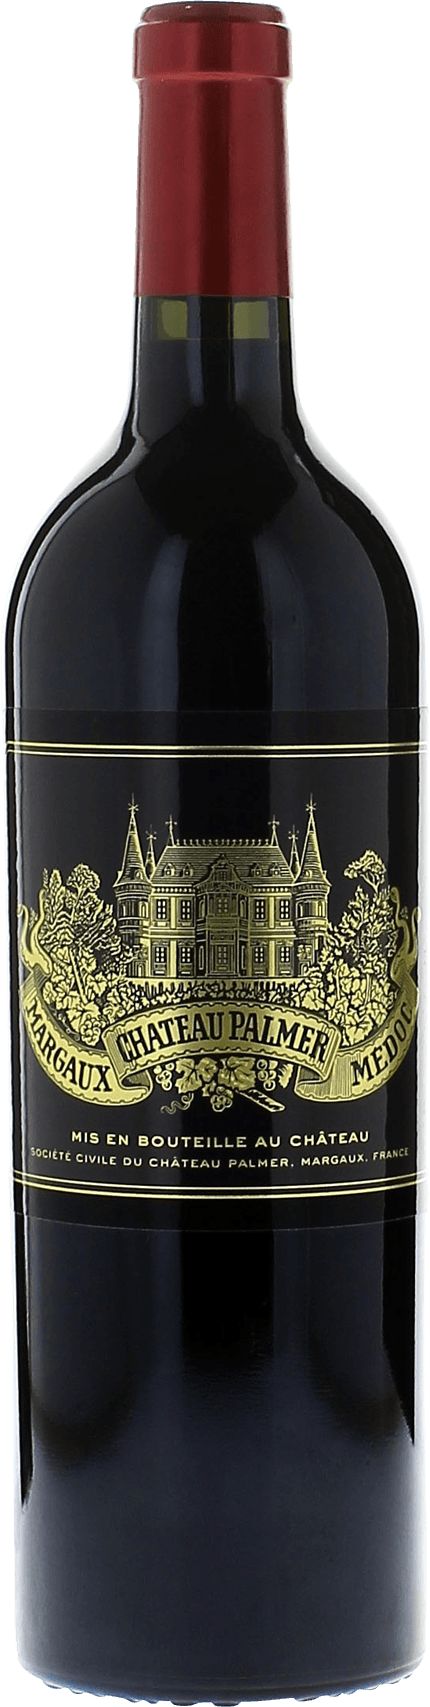 Palmer (ex-chteau 2022) 2012 3me Grand cru class Margaux, Bordeaux rouge